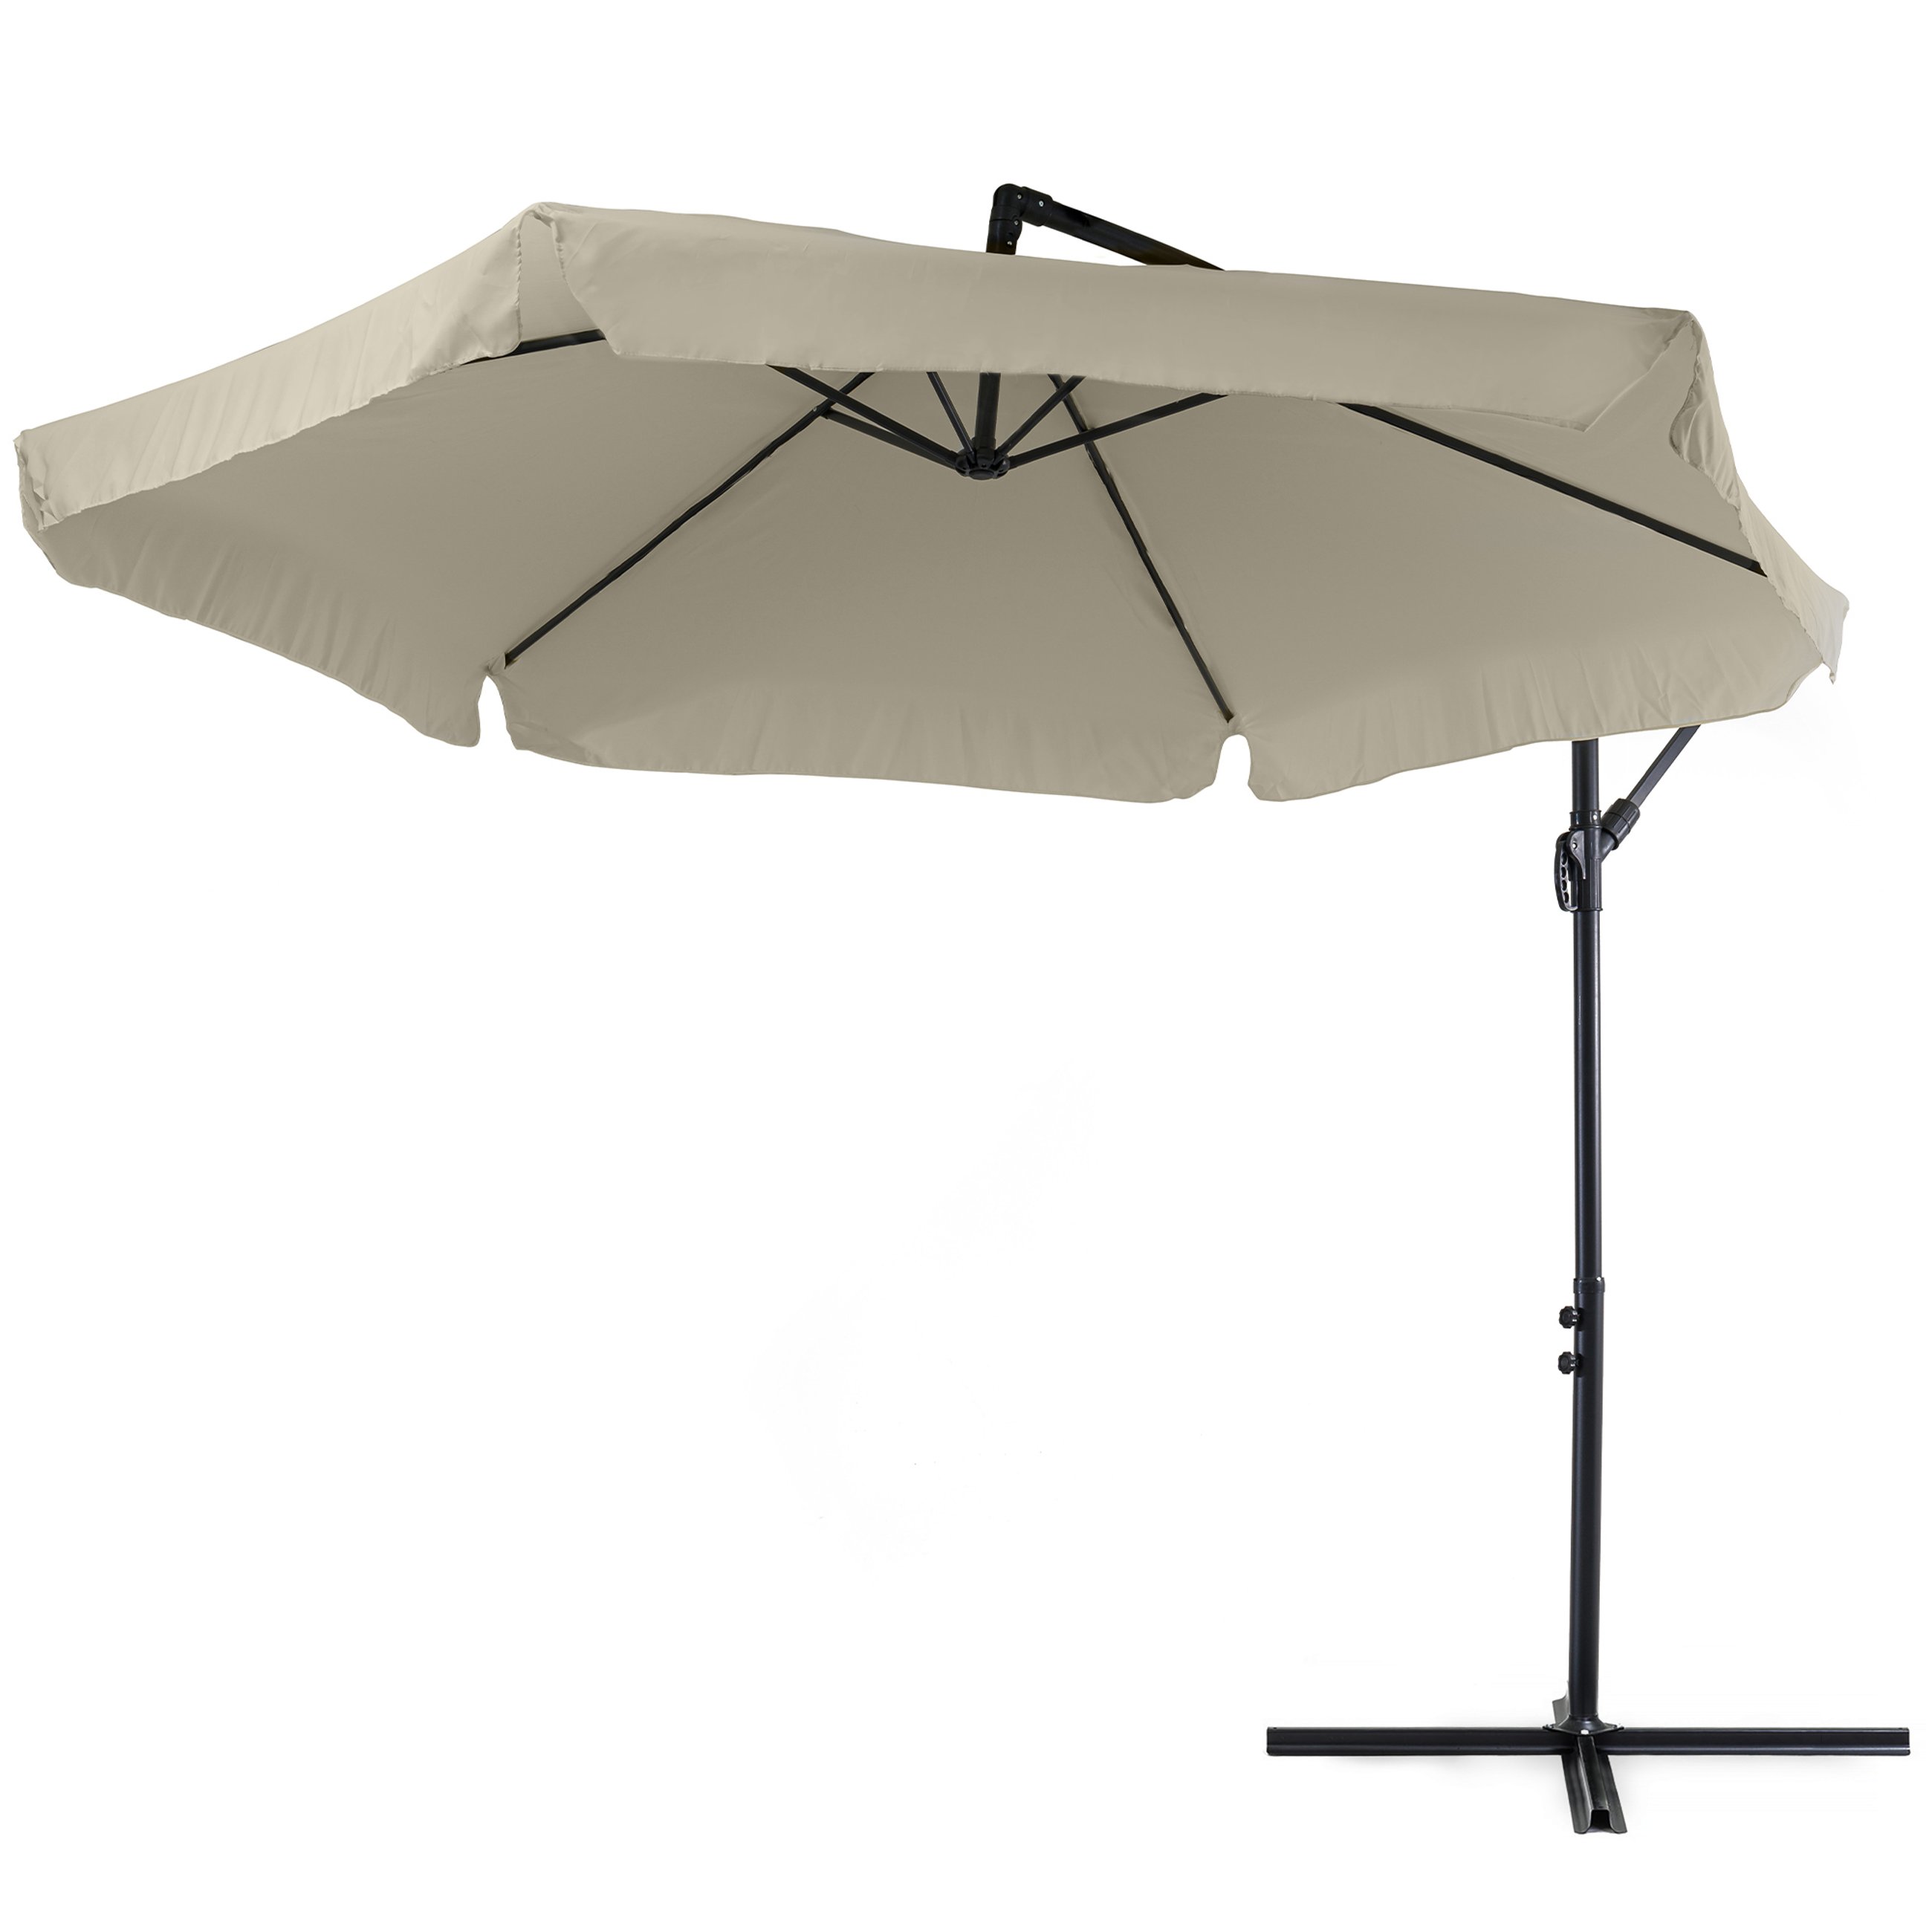 Poszycie parasola Empoli beżowe wykonane jest z grubej poliestrowej tkaniny